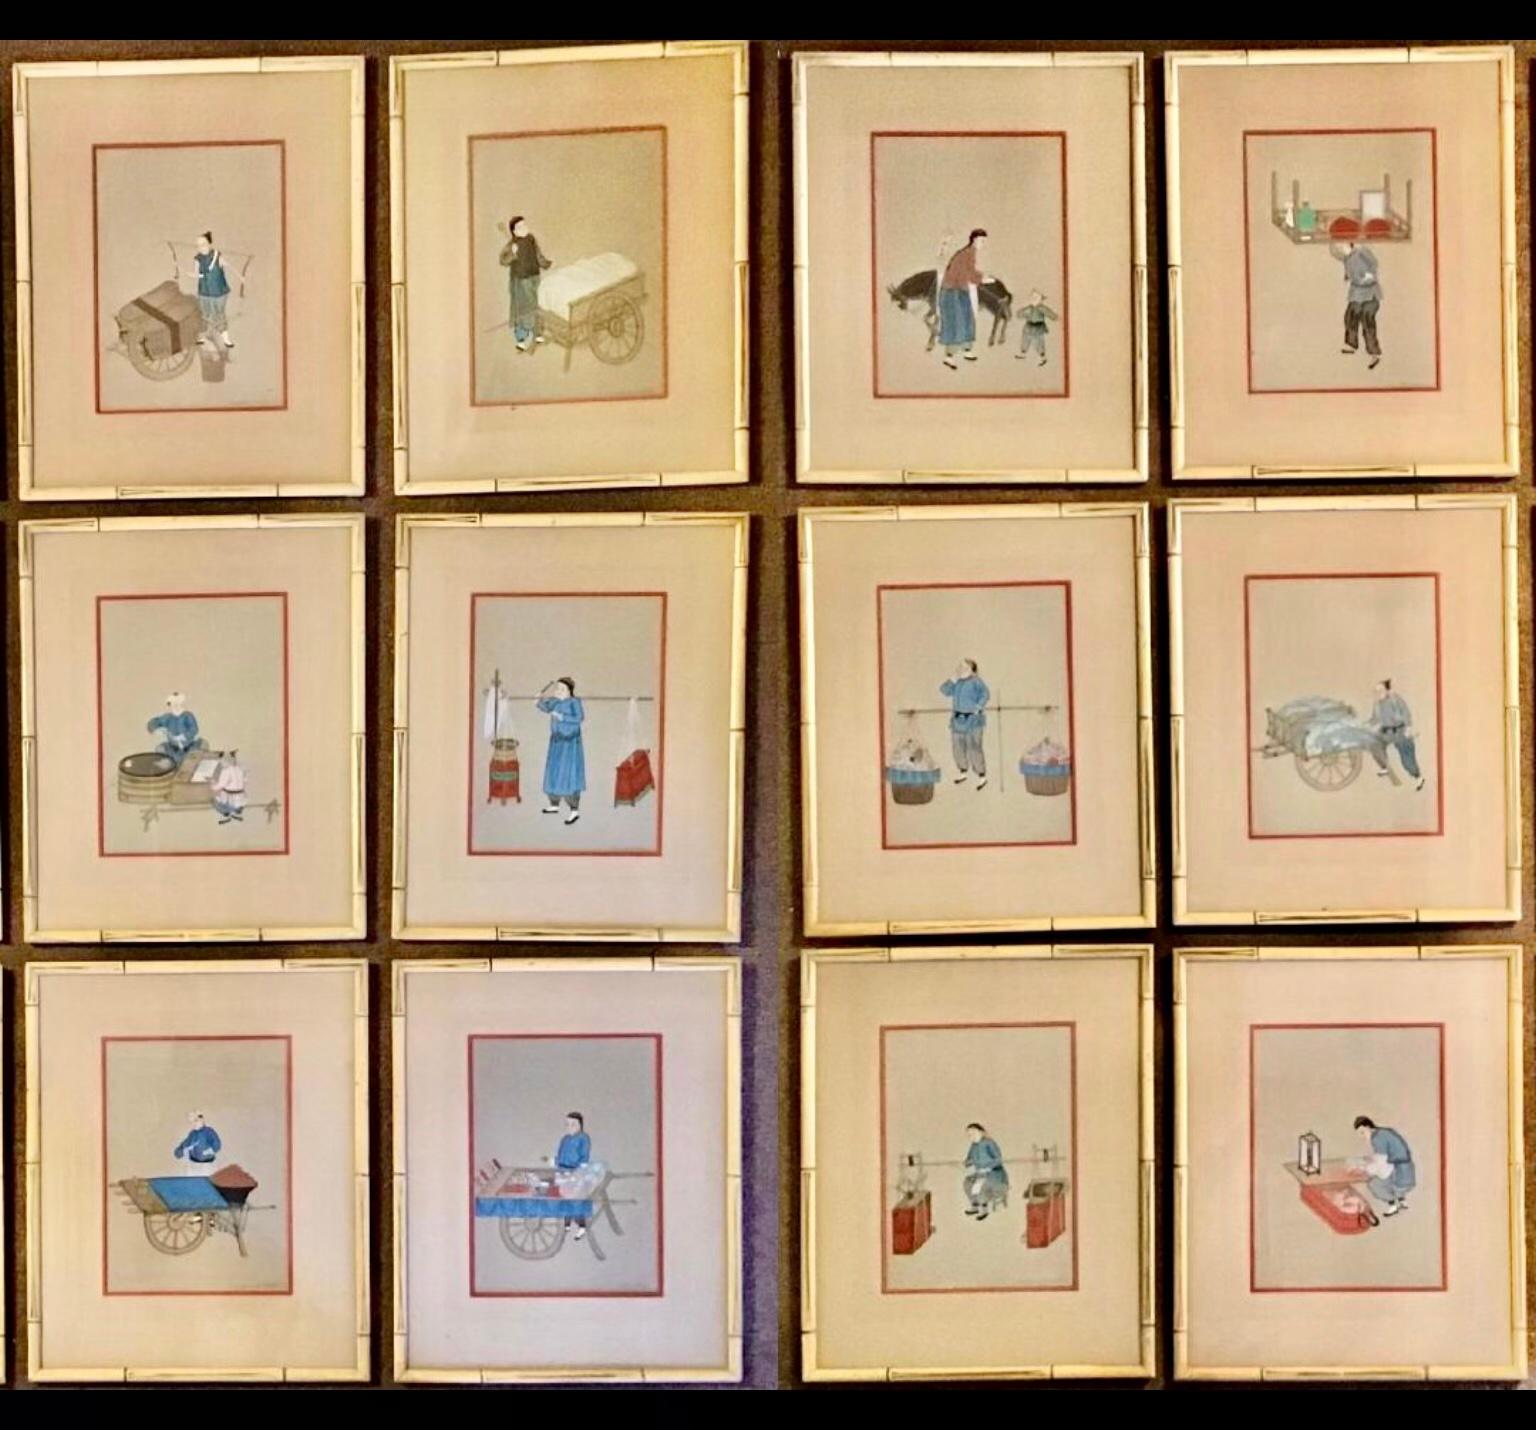 Ensemble de douze peintures chinoises à la gouache du début du 20e siècle représentant la vie quotidienne de divers artisans. Il peut s'agir par exemple d'un barbier, d'un vendeur de nourriture, d'un guérisseur, etc. Elles sont toutes encadrées sous